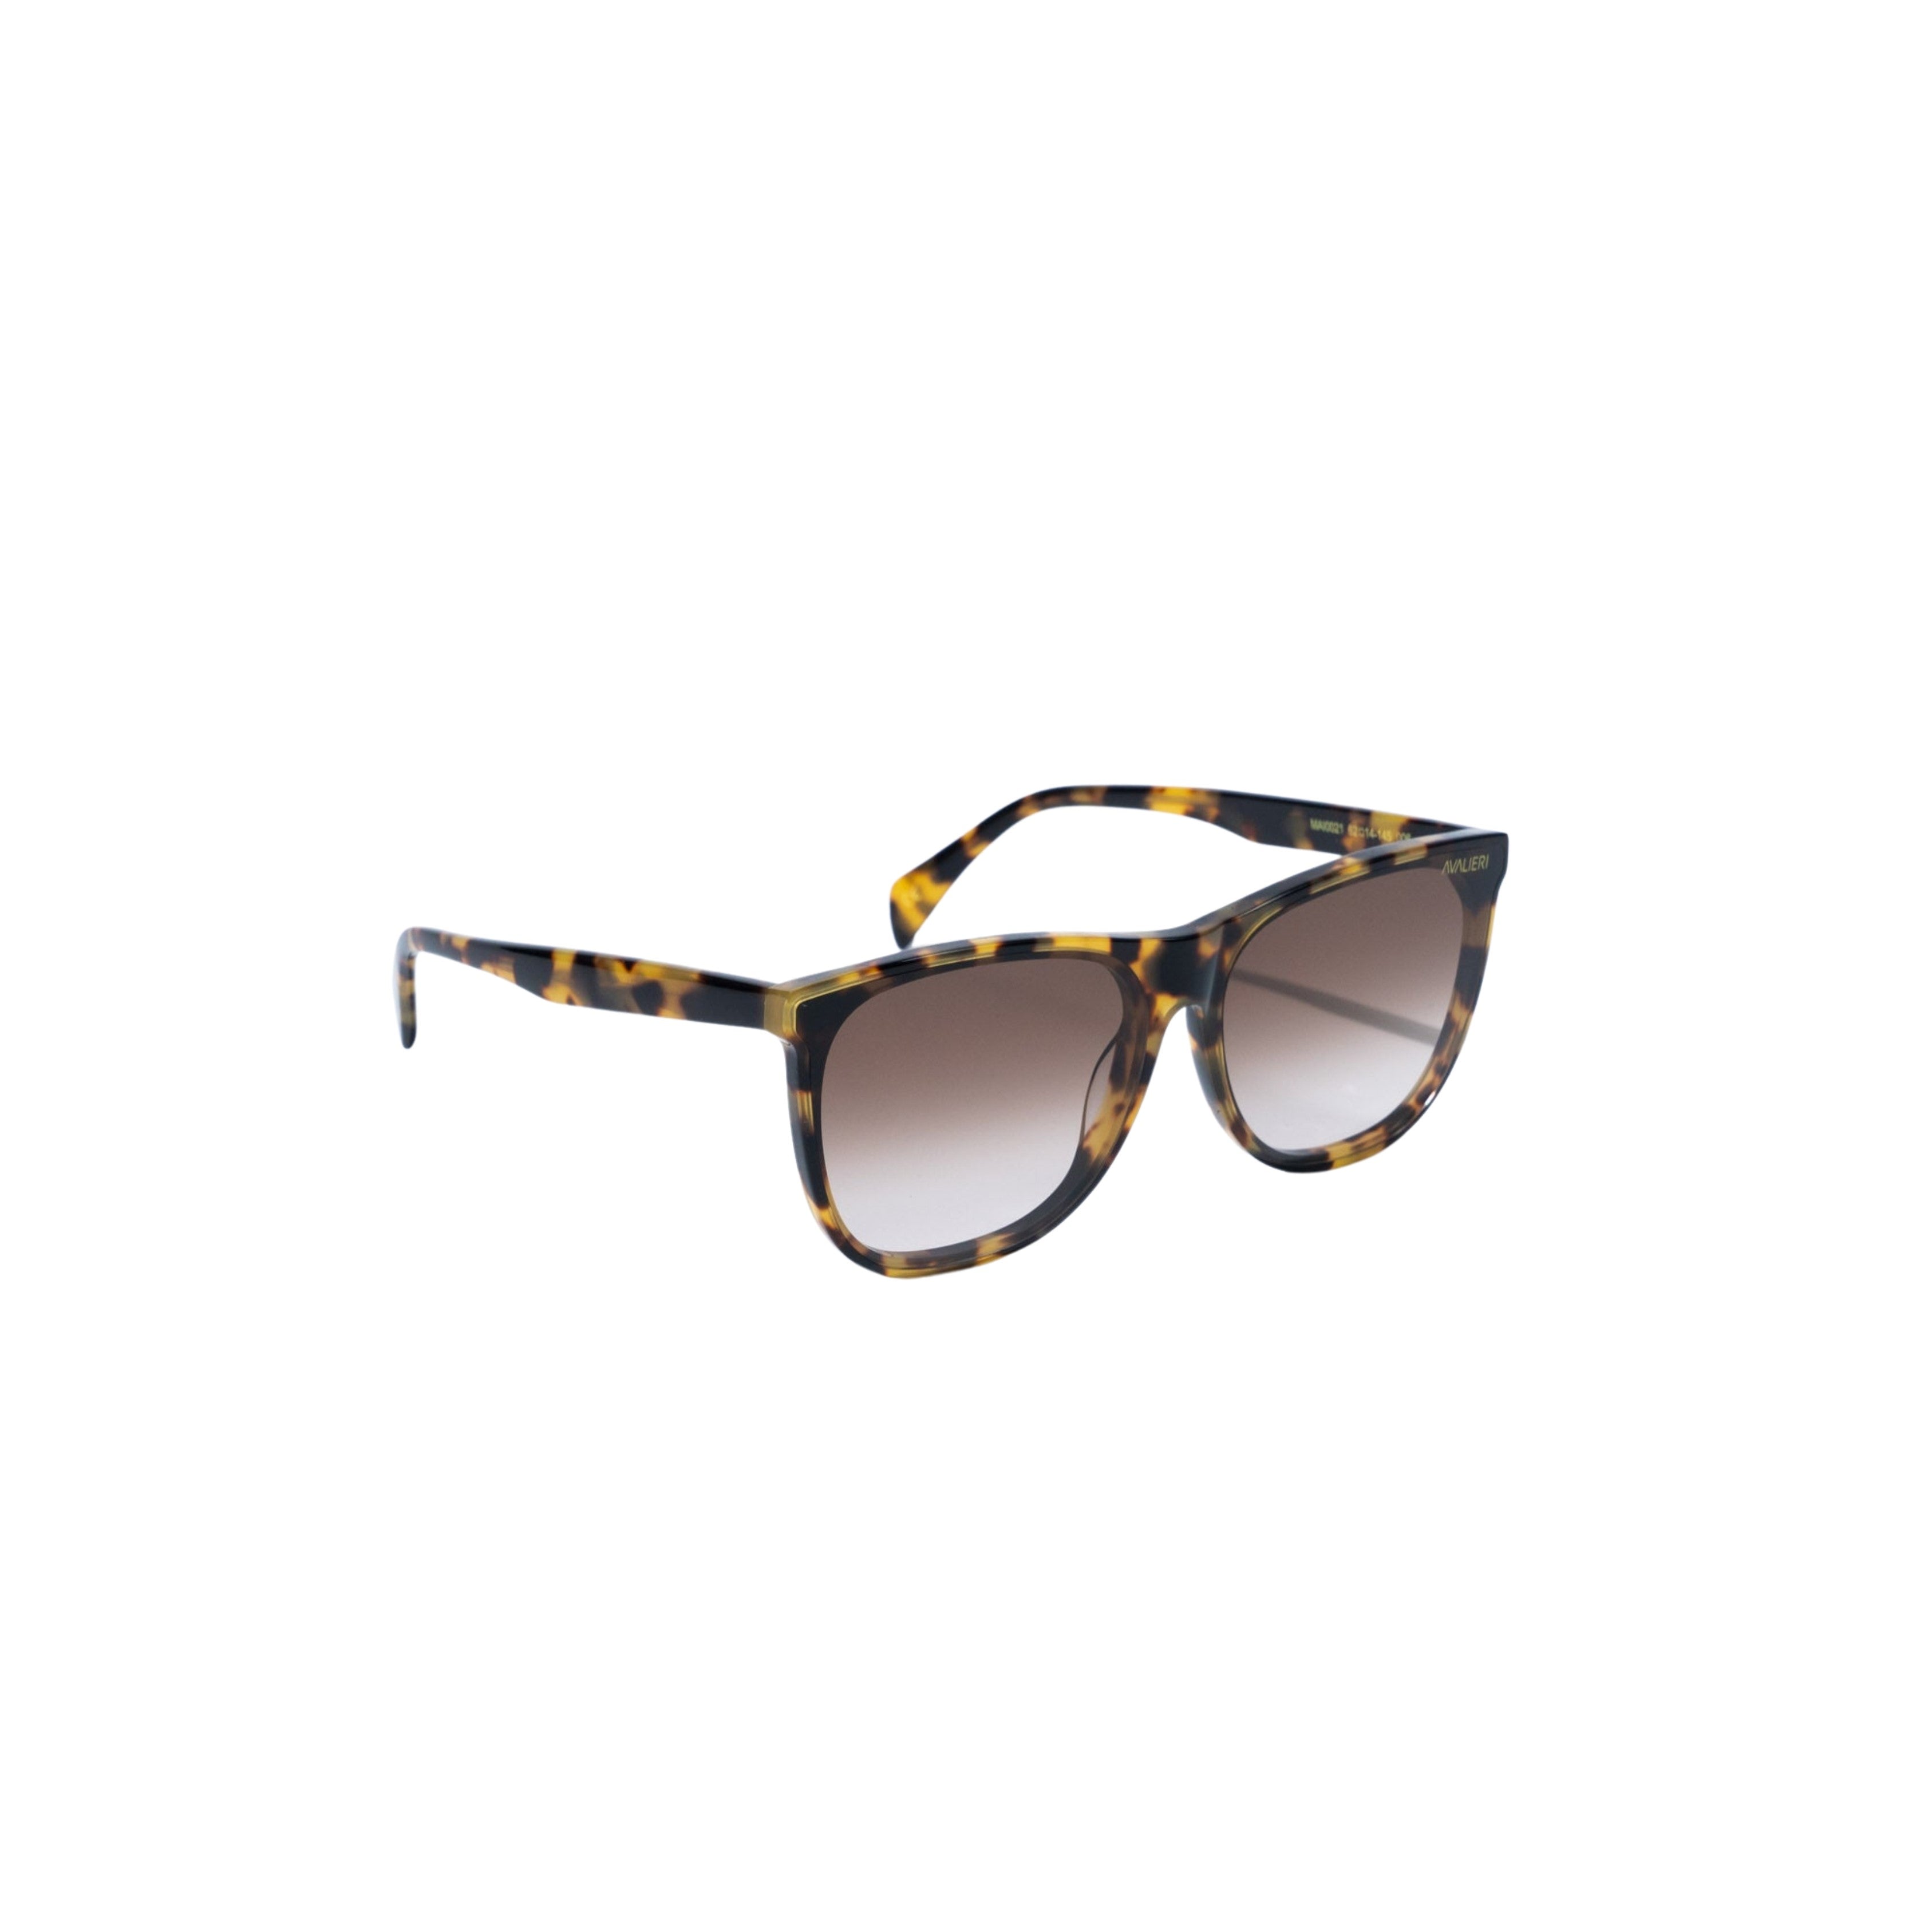 Avalieri Brown Sunglasses for Men and Women - AVSG-0002